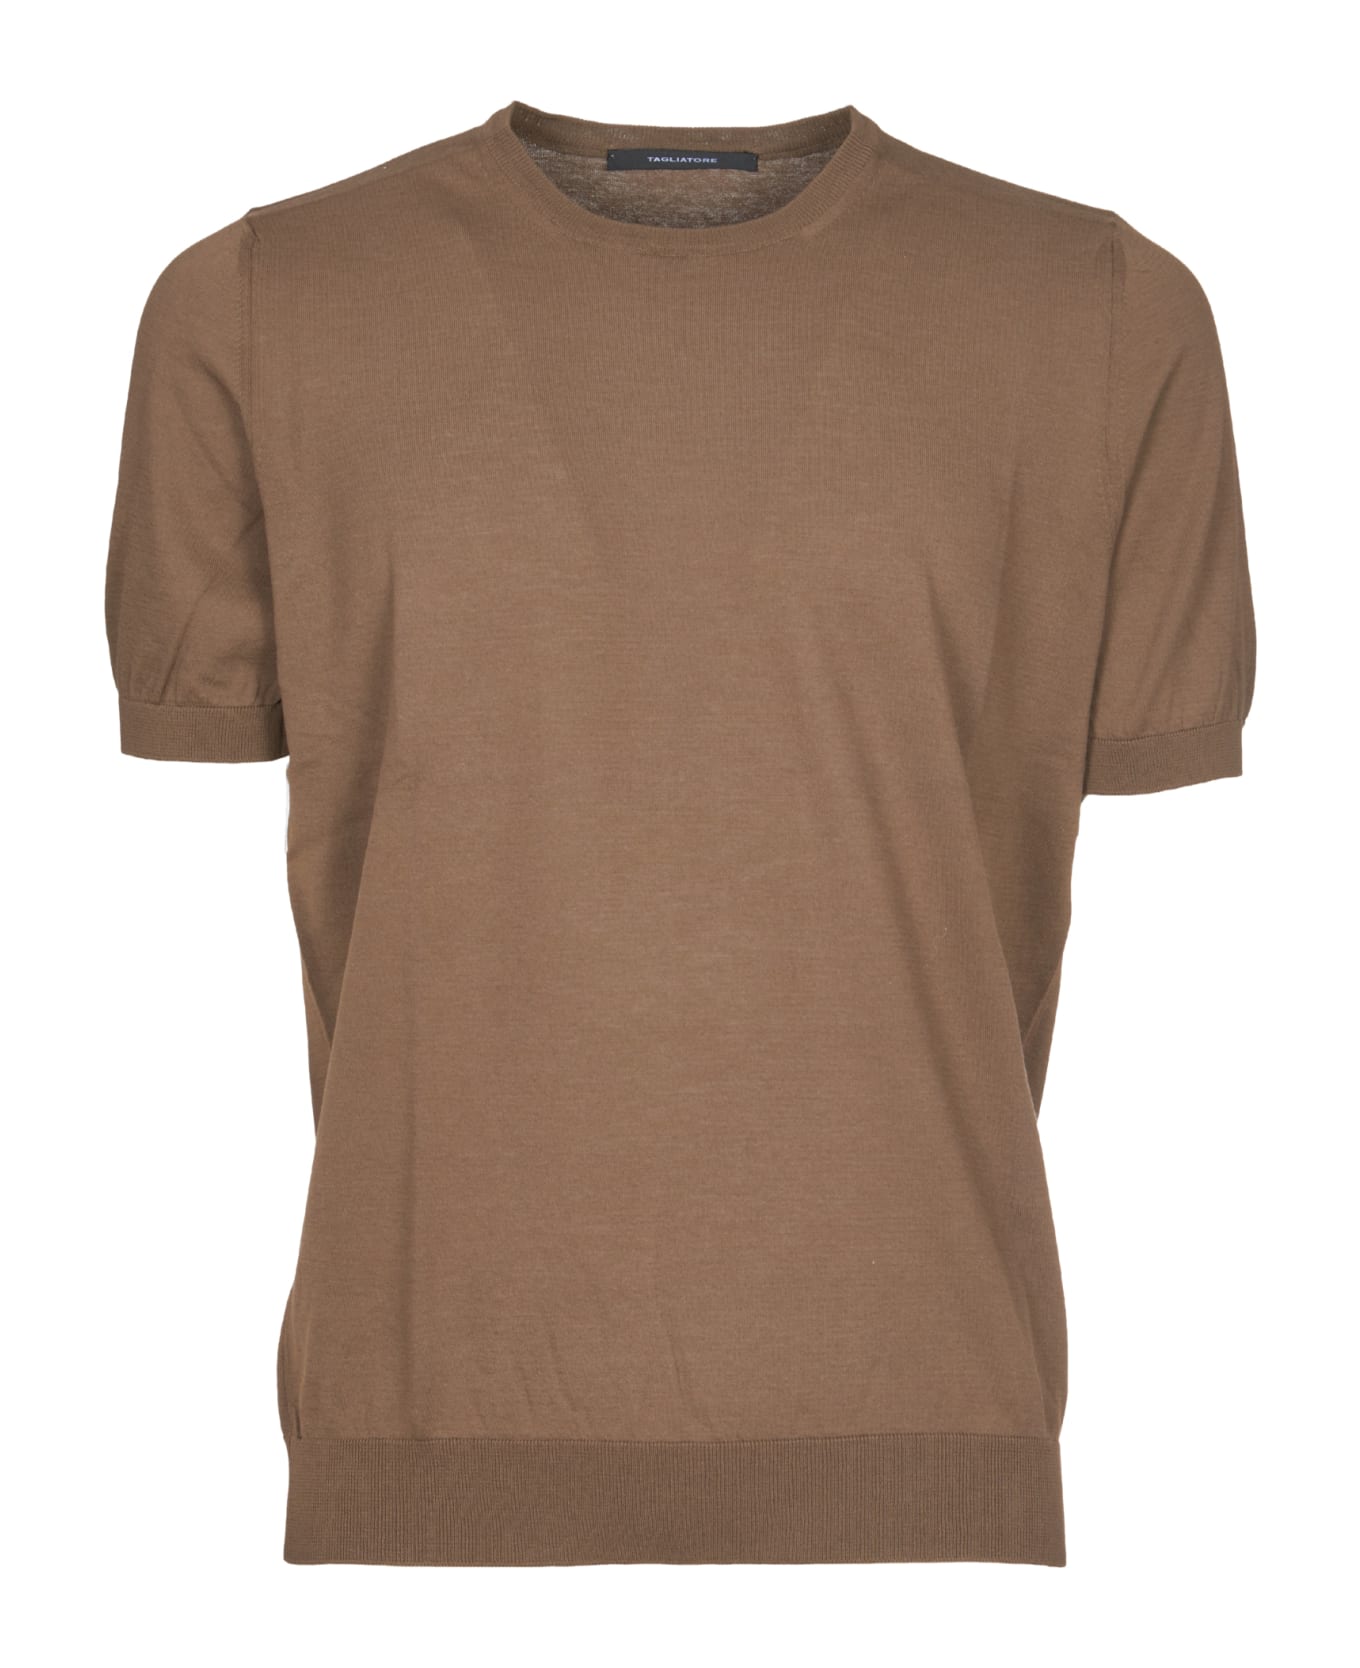 Tagliatore T-shirt - Brown シャツ